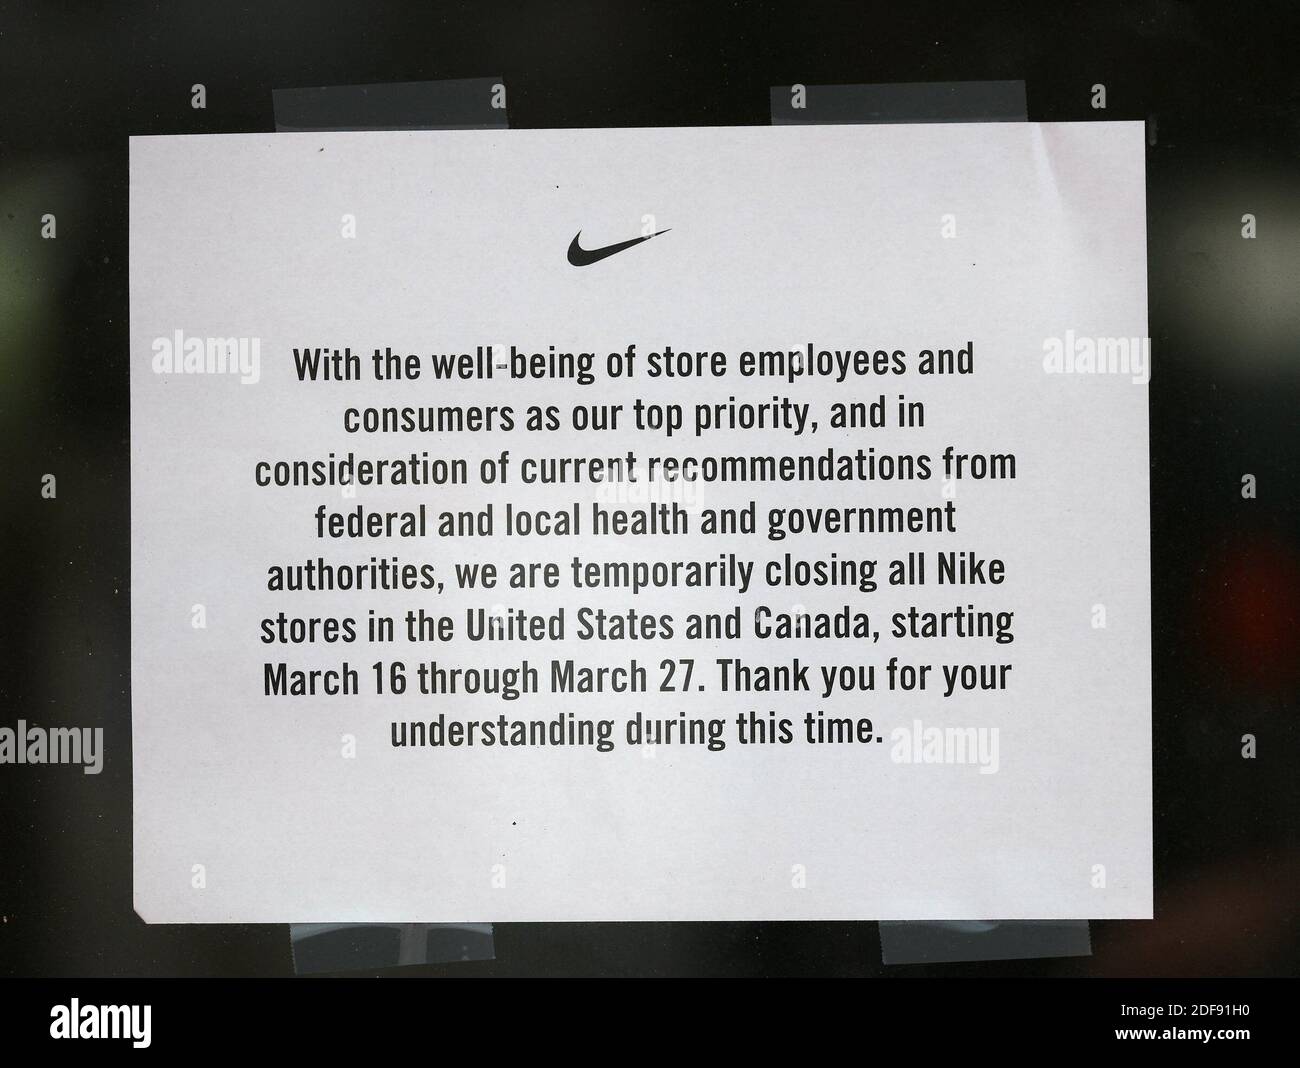 NESSUN FILM, NESSUN VIDEO, NESSUNA TV, NESSUN DOCUMENTARIO - il negozio Nike  Lincoln Rd pubblica un avviso di chiusura in quanto le conseguenze della  pandemia COVID-19 hanno forzato la chiusura della maggior